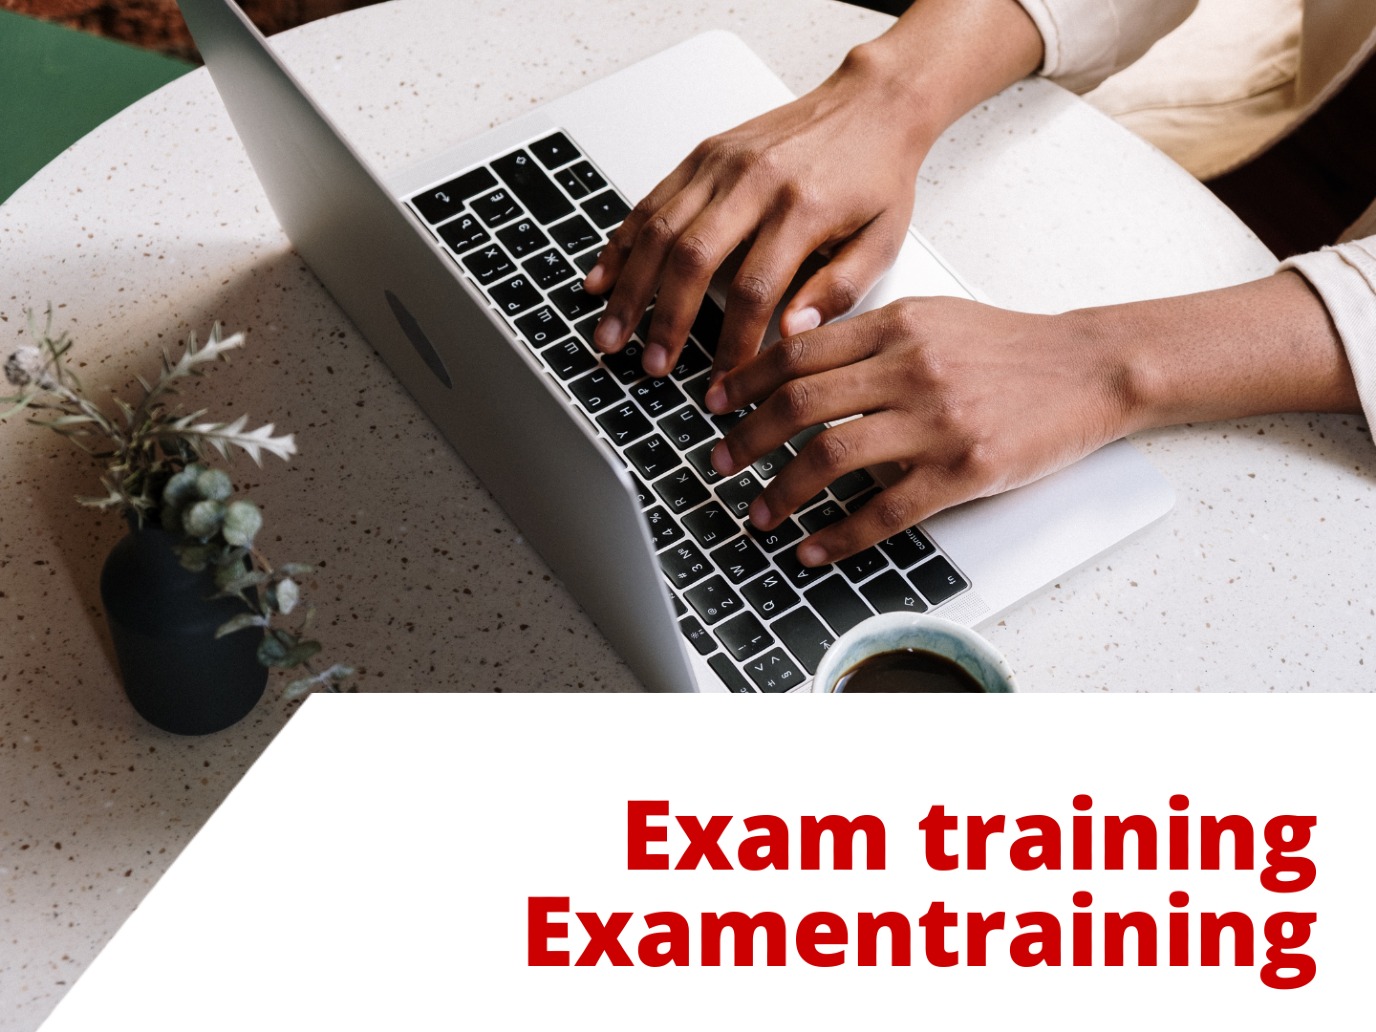 Online Exam Training: State Exam NT2-II